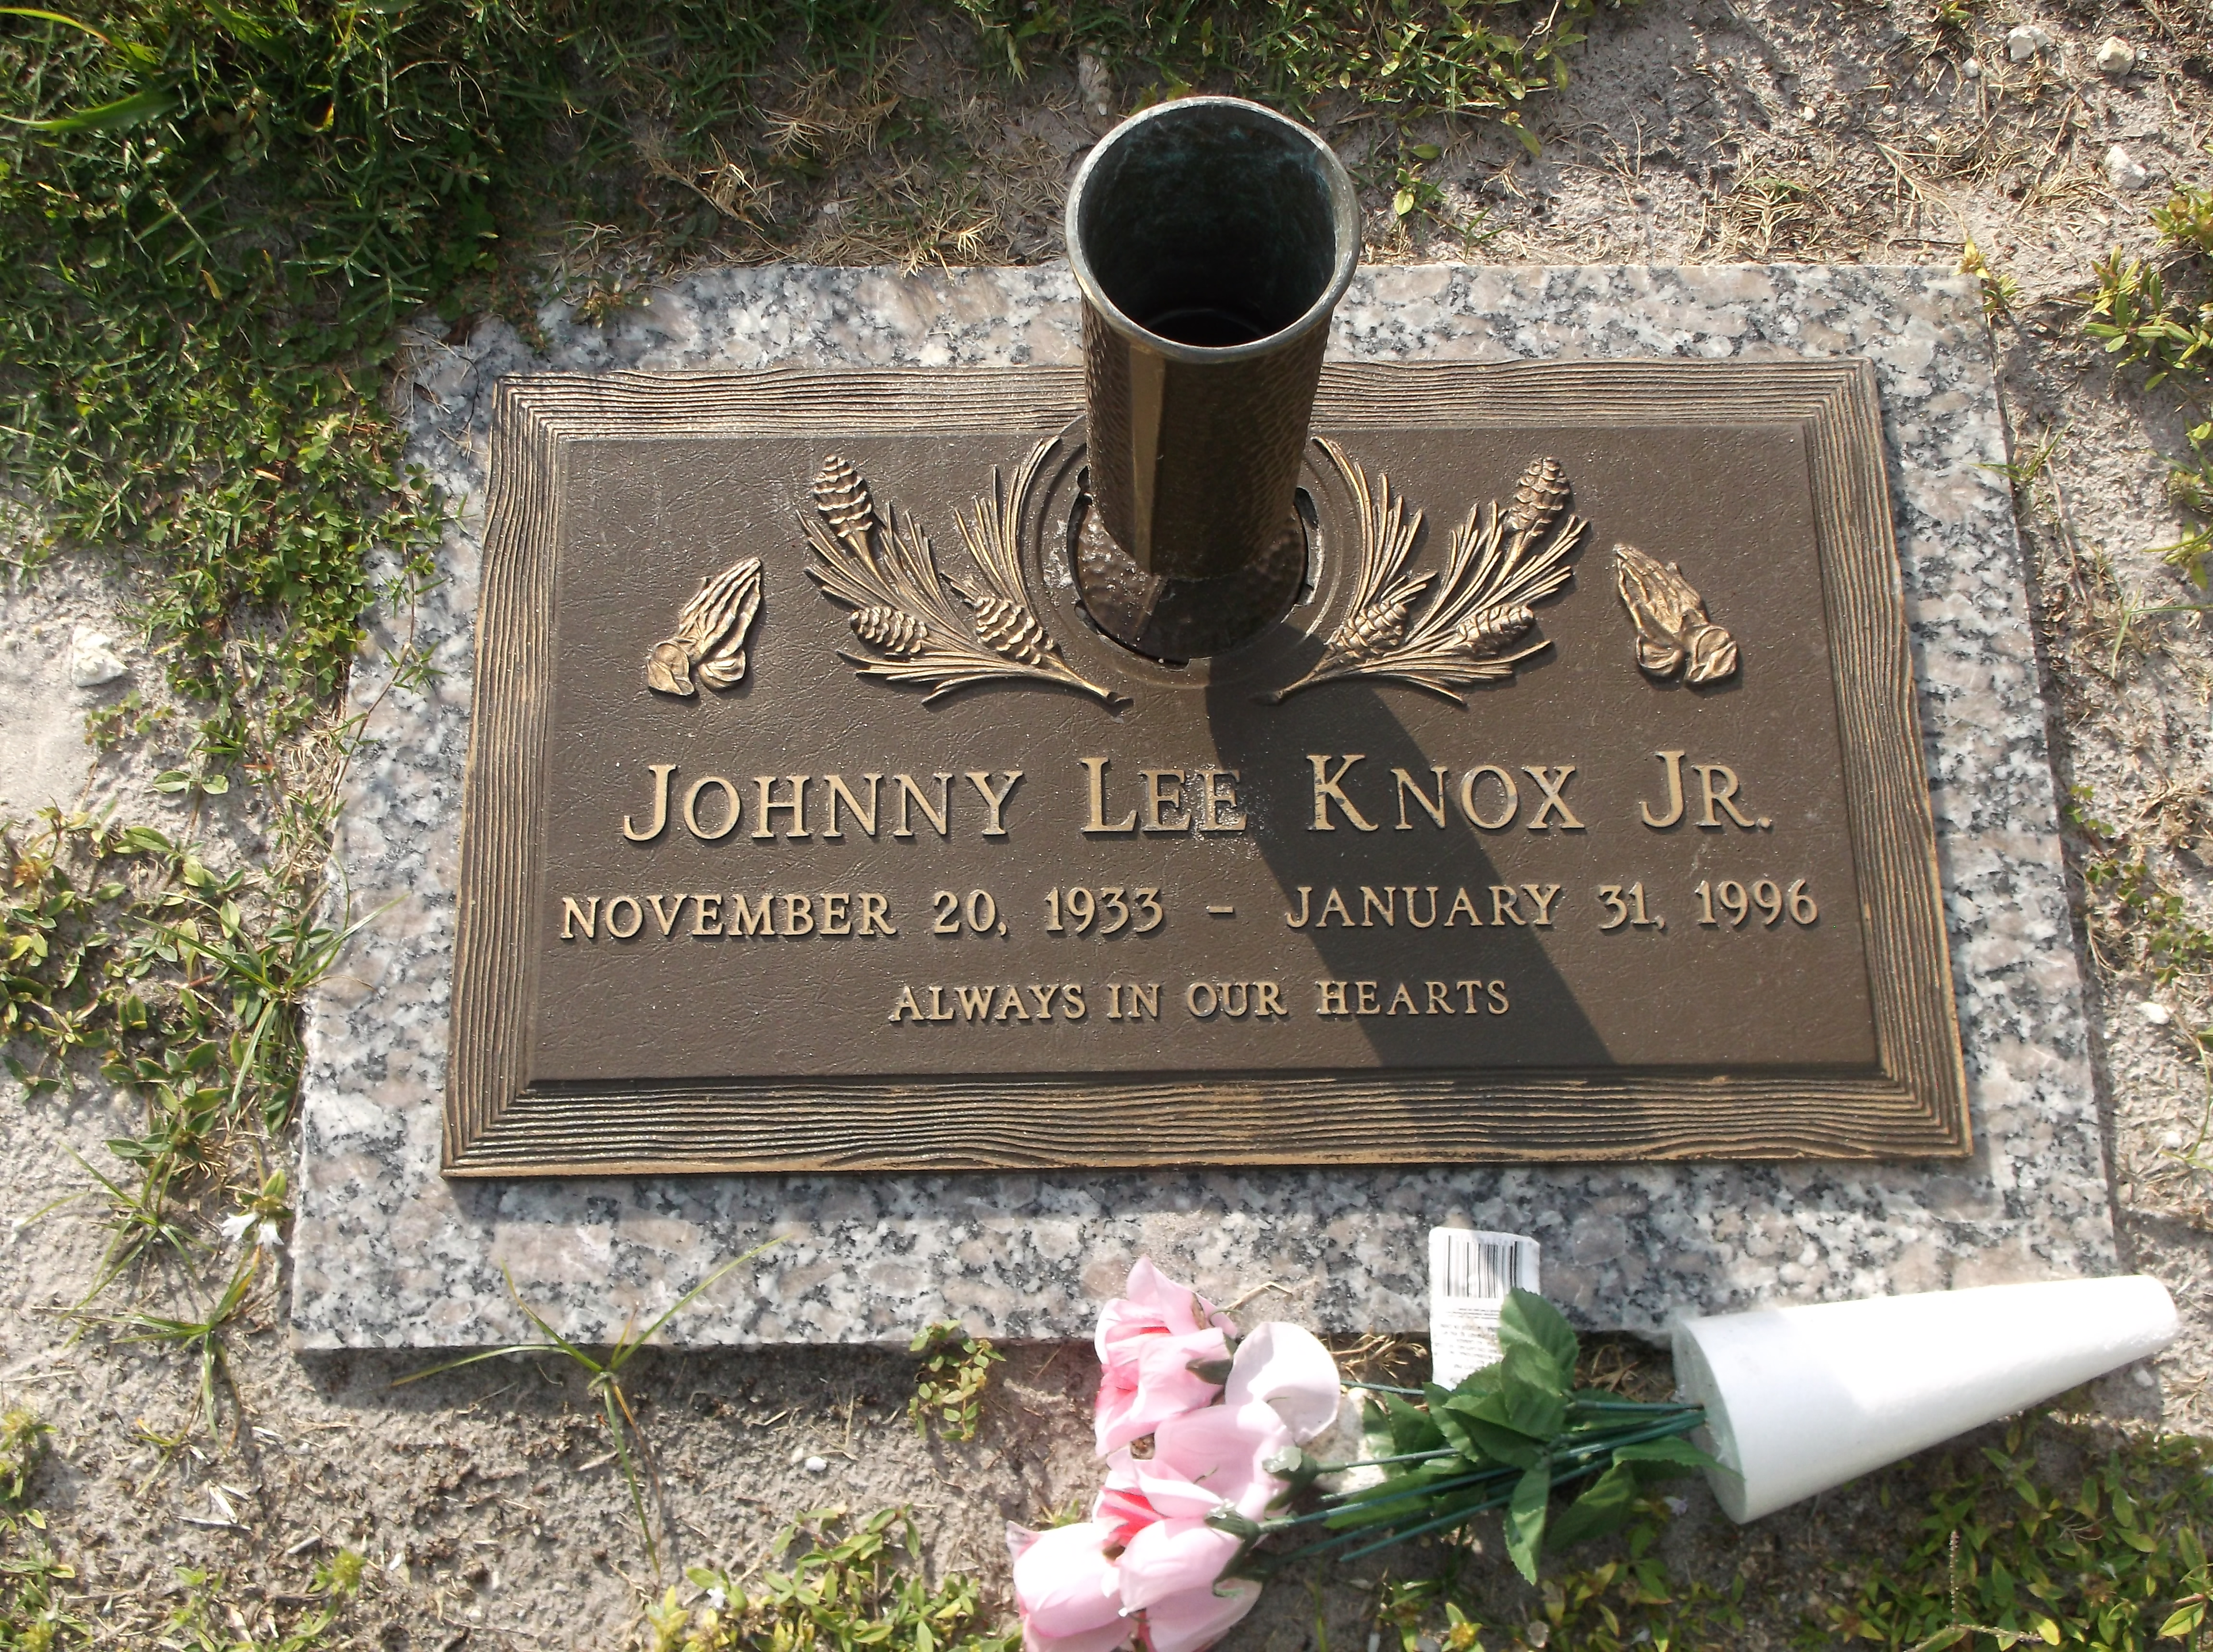 Johnny Lee Knox, Jr